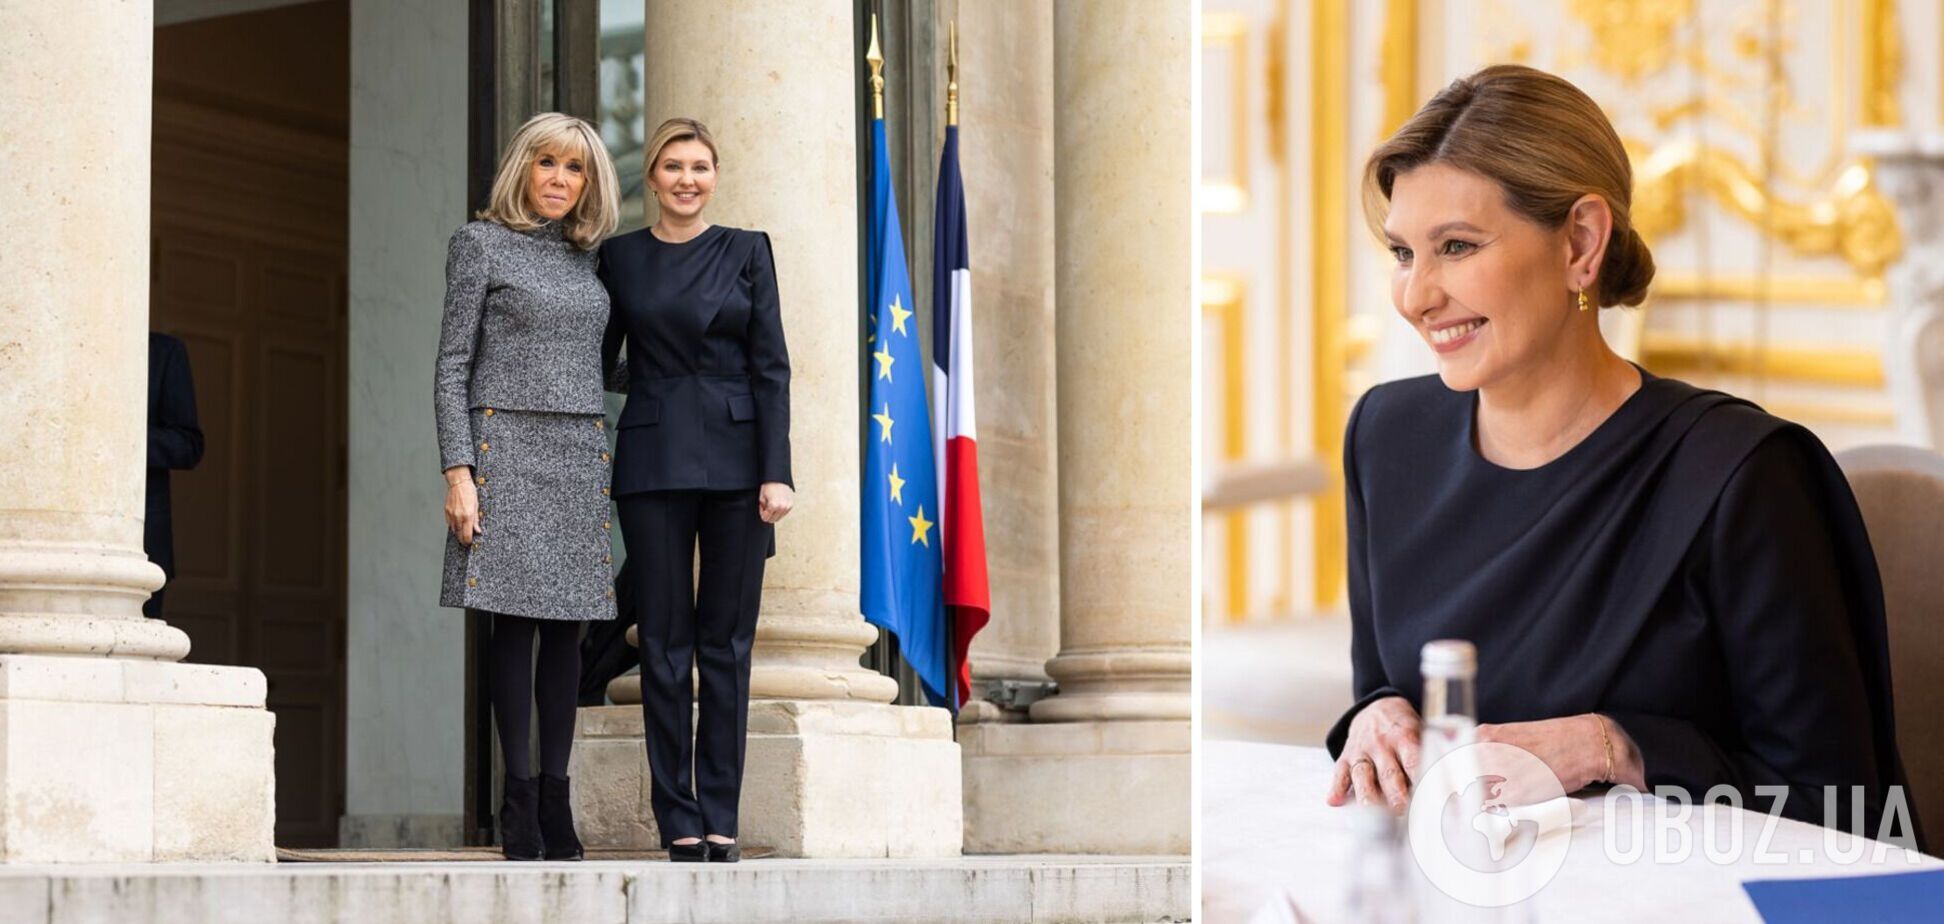 Зеленская во Франции встретилась с Брижит Макрон: первая леди выбрала изысканный лук украинского бренда. Фото